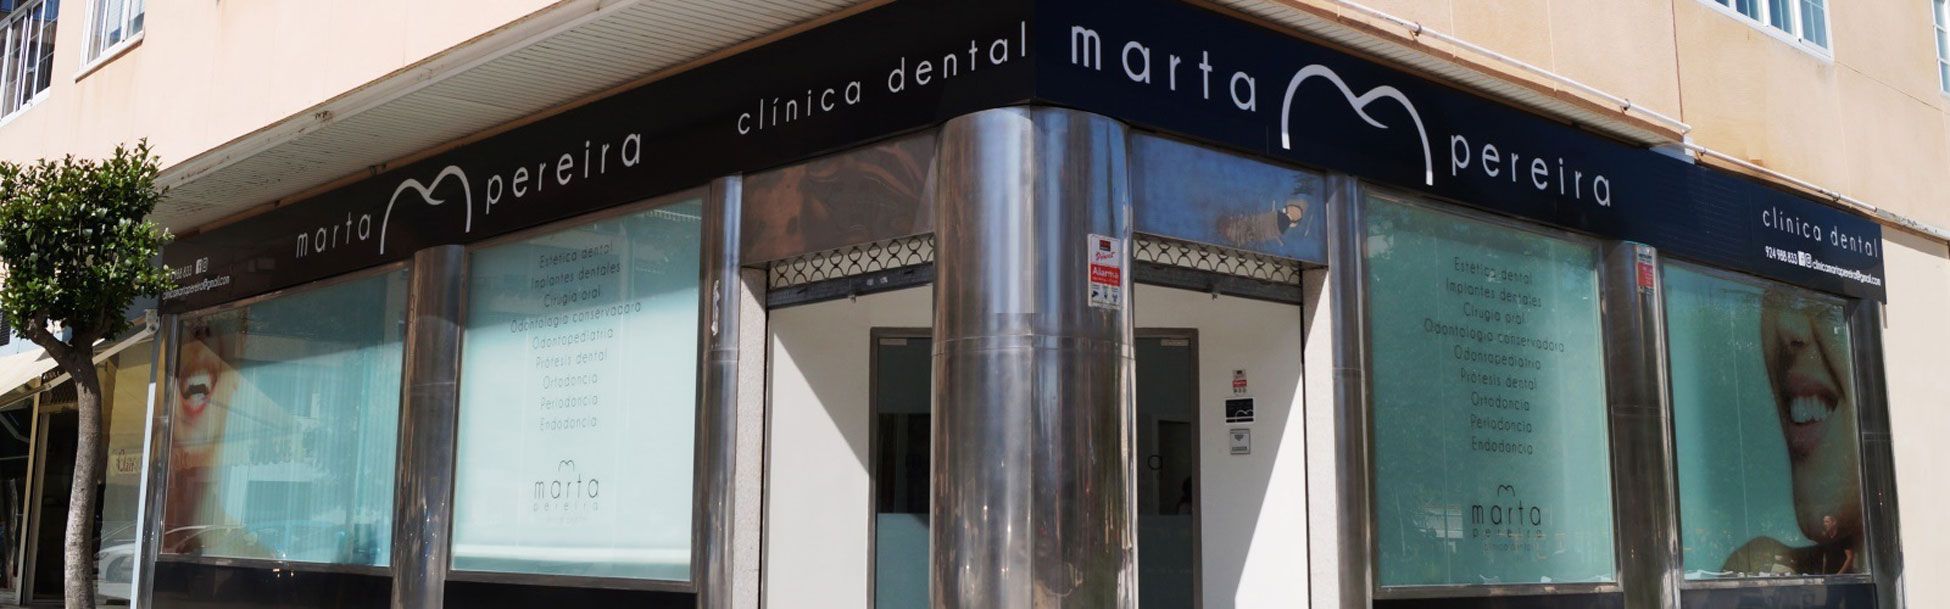 Clínica Dental Marta Pereira banner 2